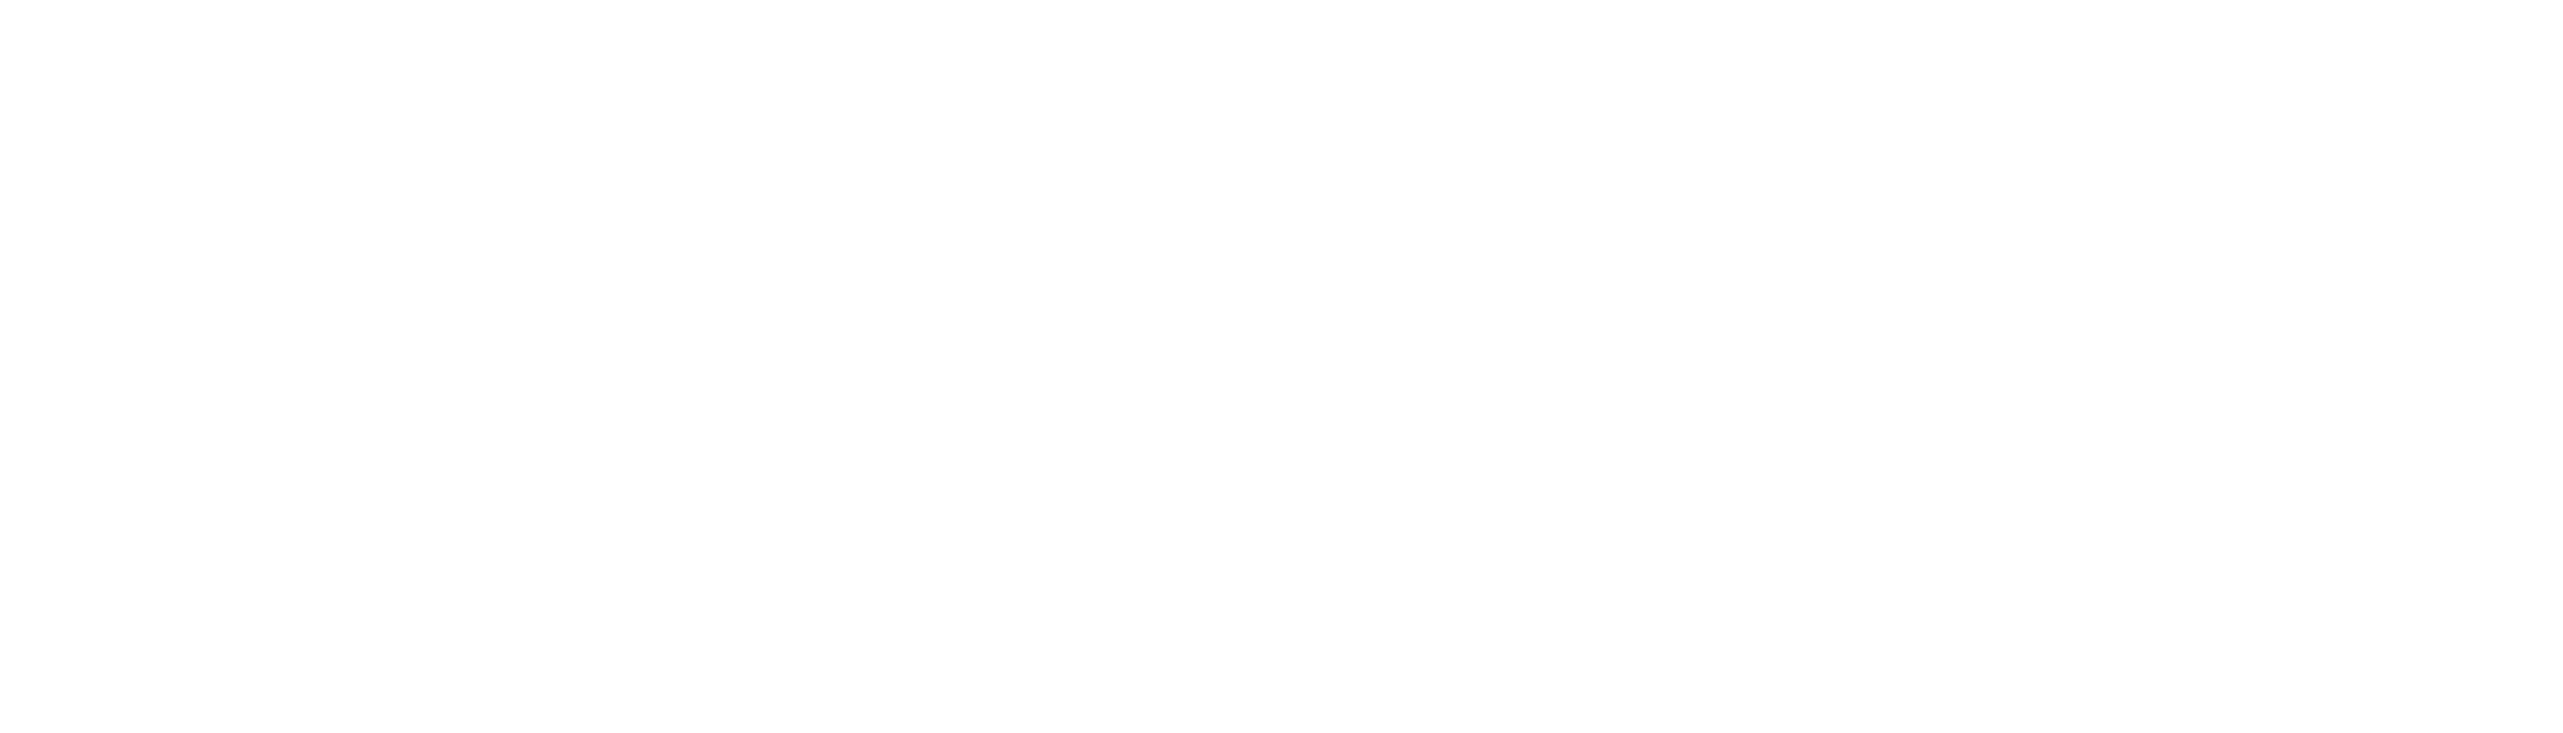 Motorola 2018 Logo - Motorola Logo White.png